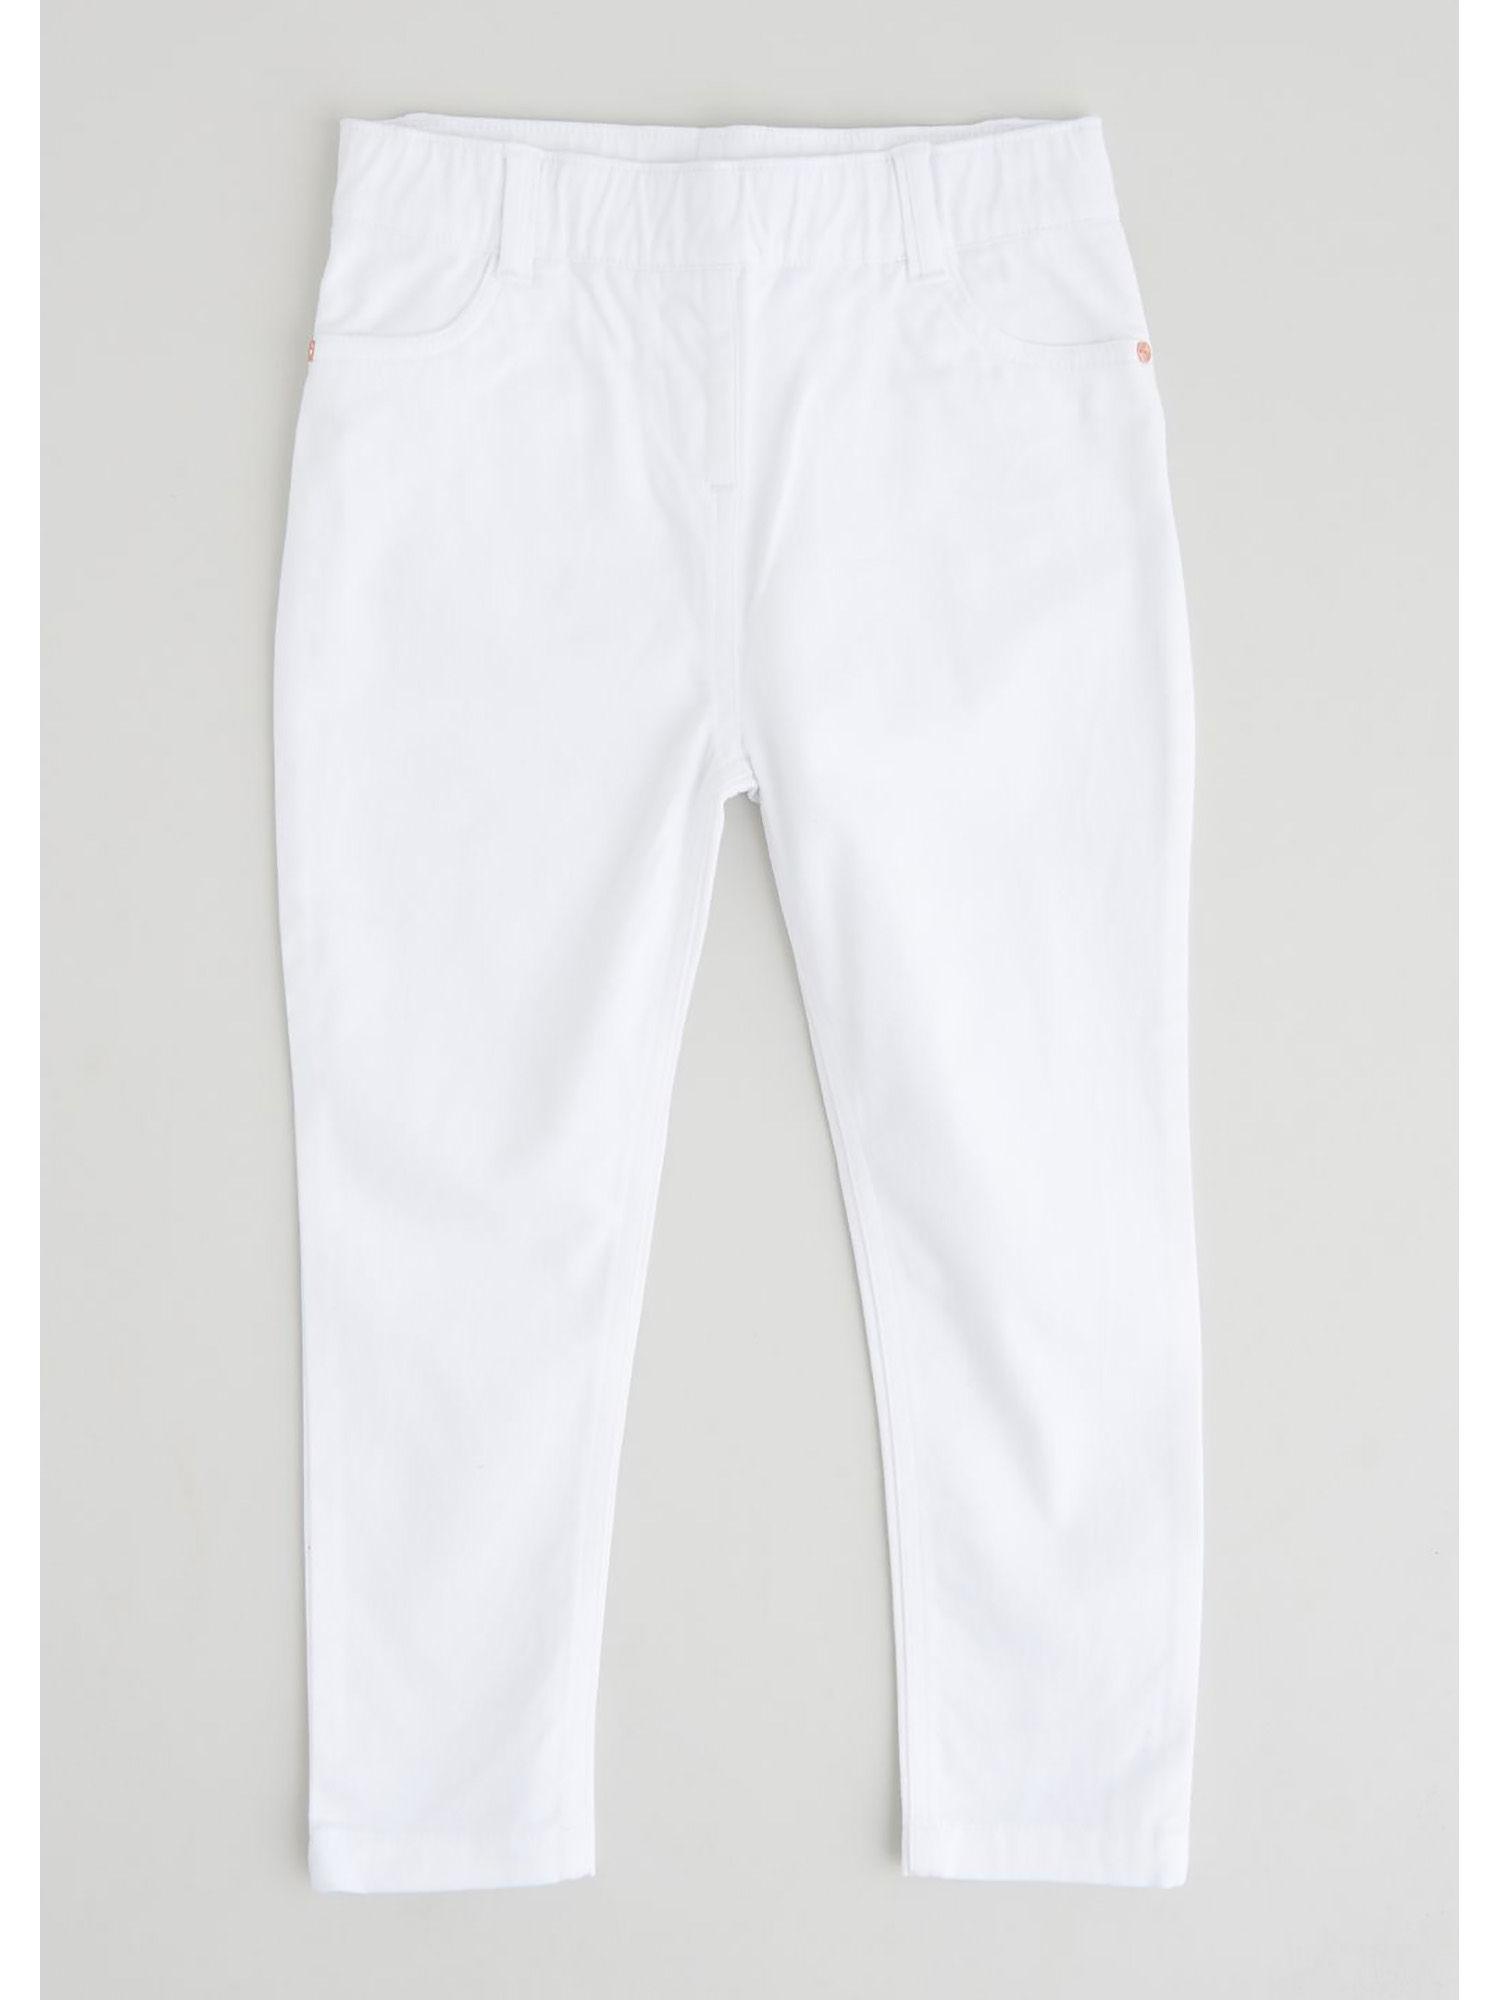 woven leggings - white